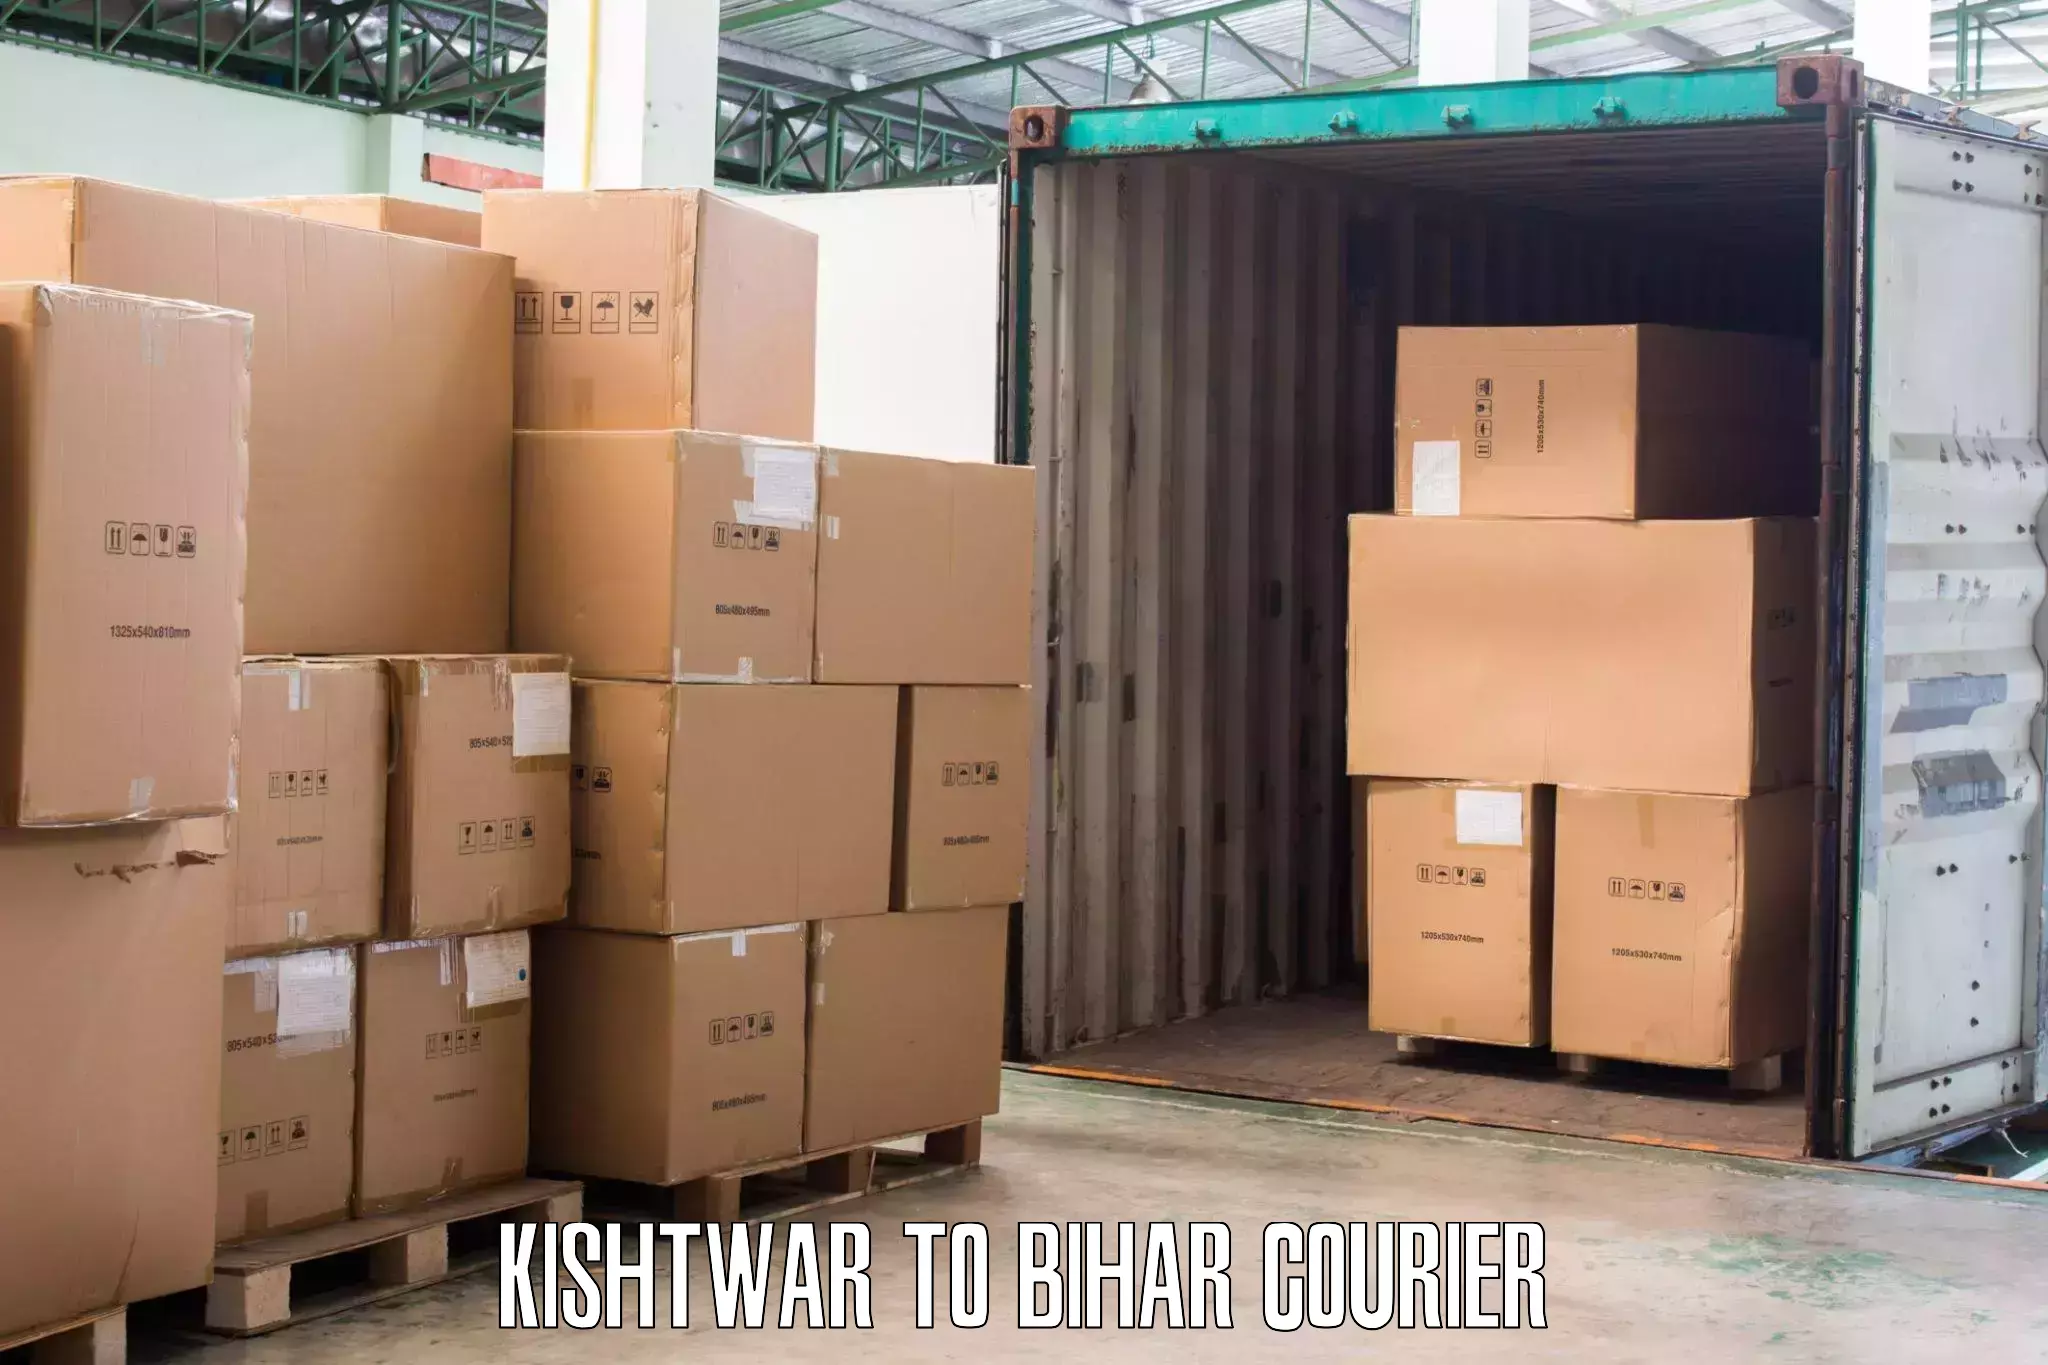 Furniture delivery service Kishtwar to Narpatganj